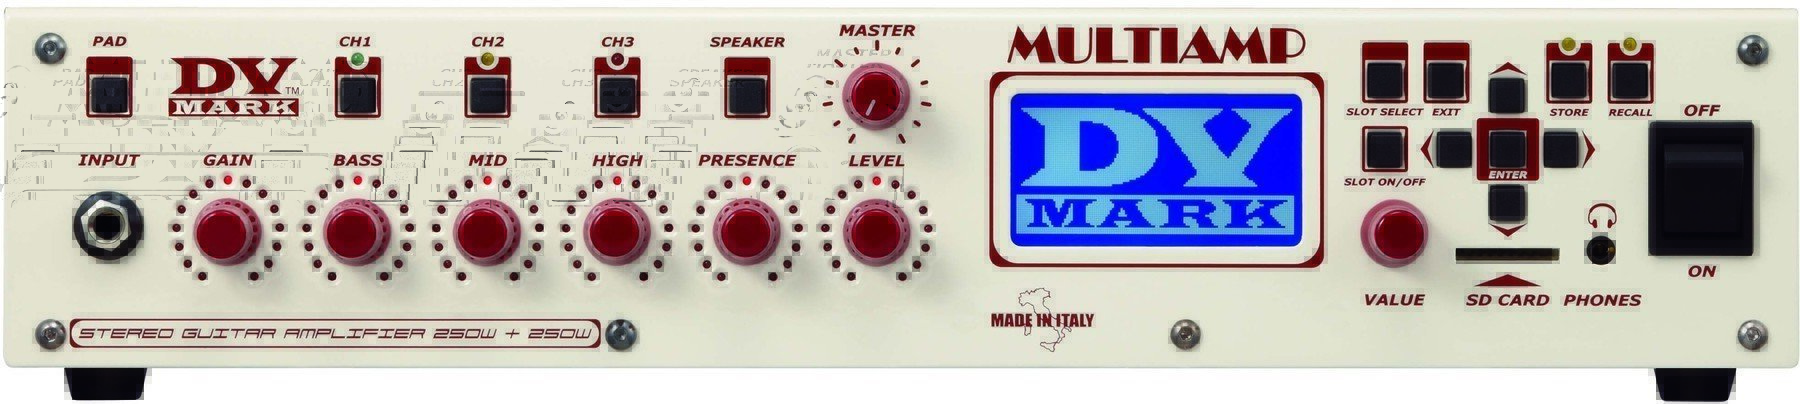 Modeling Guitar Amplifier DV Mark Multiamp Red